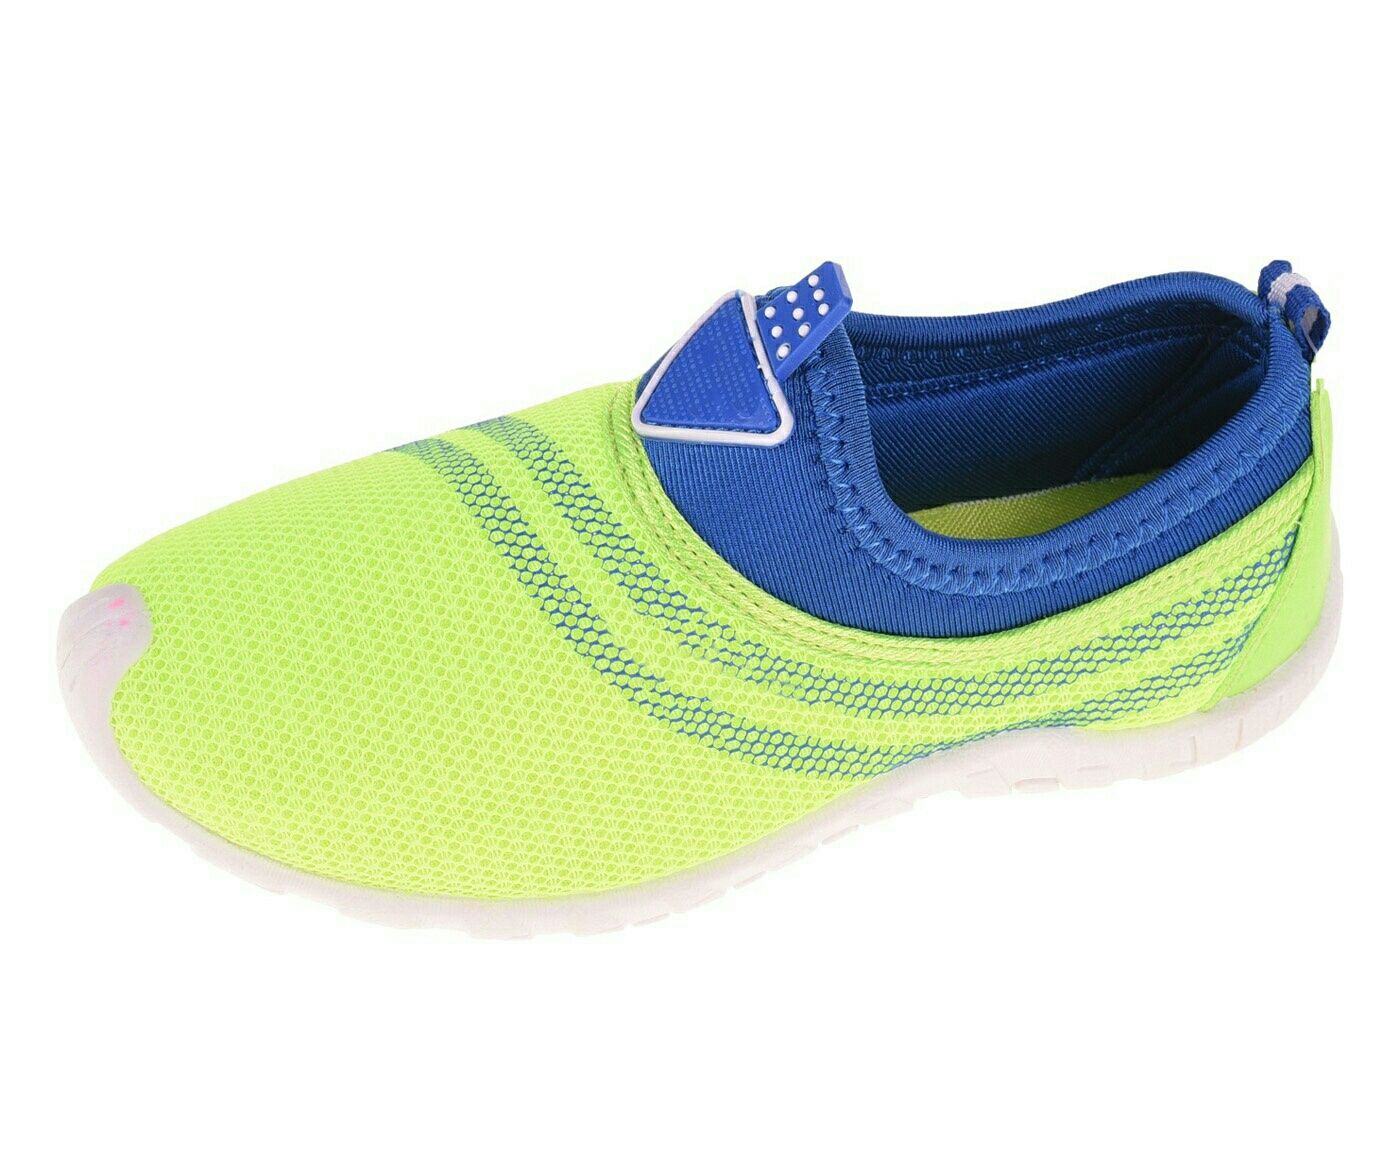 Nowe buty do wody firmowe aqua wave rozmiar 34 okazja tanio